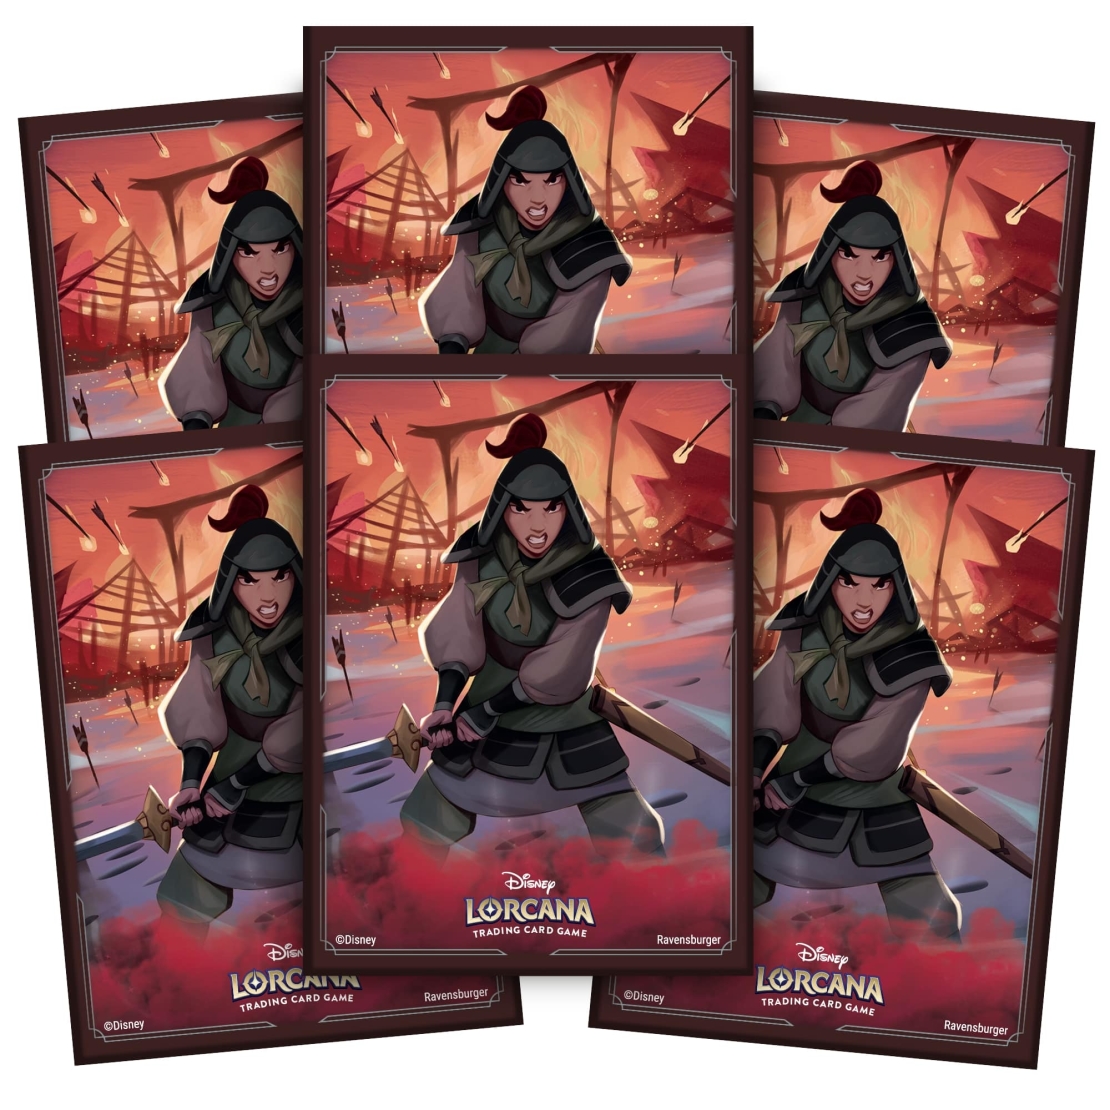 Disney Lorcana - Mulan протектори за карти (65)